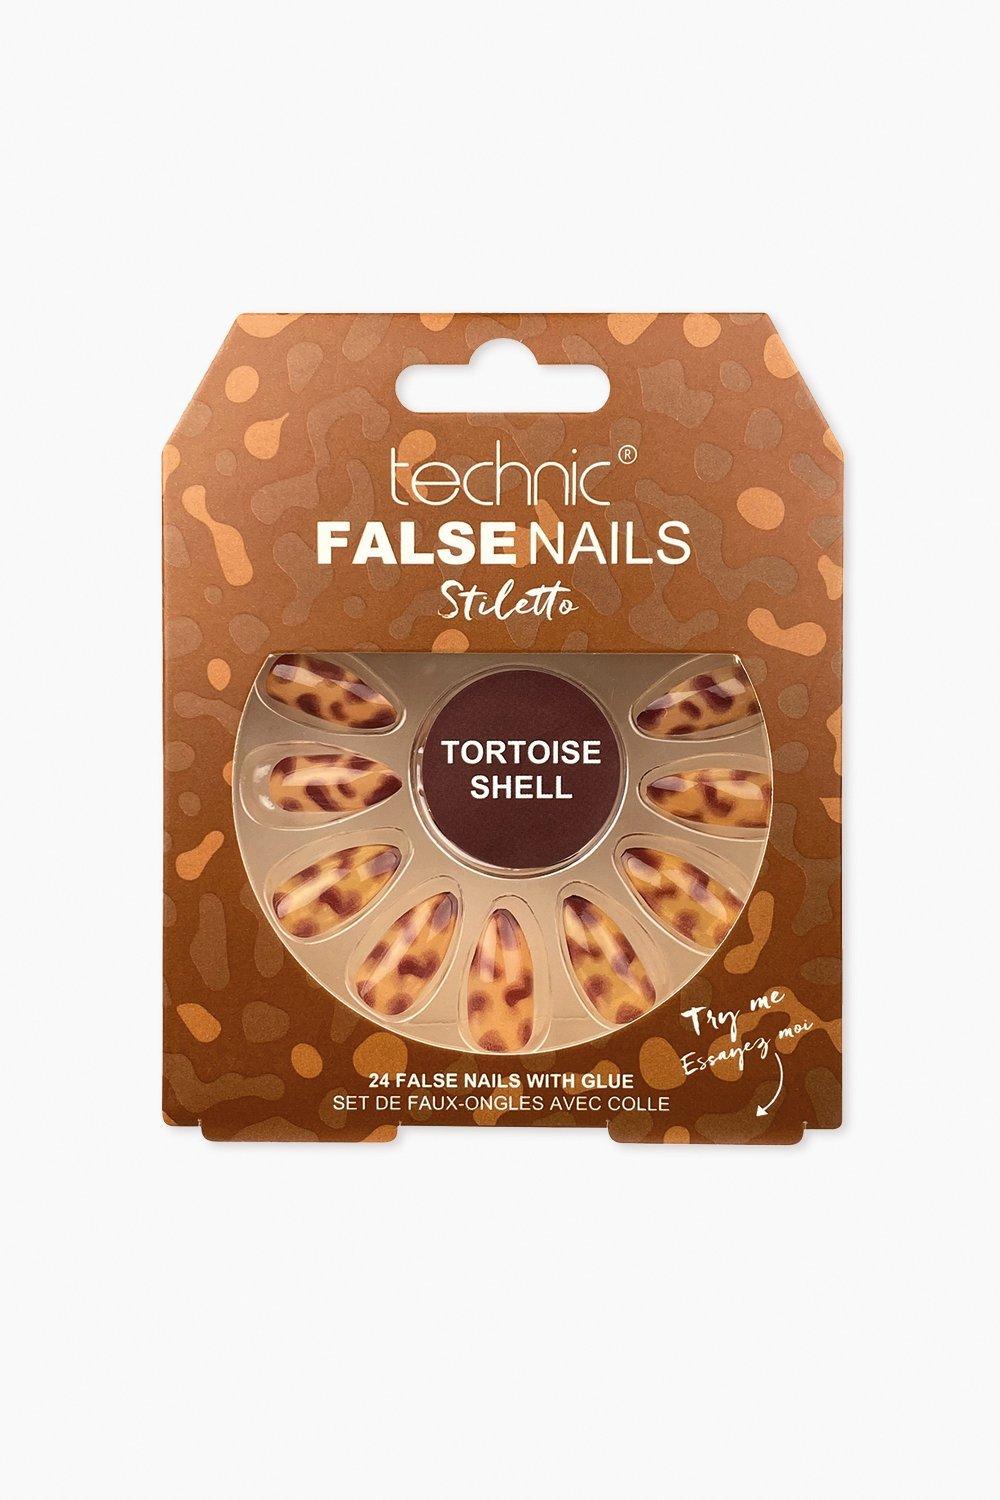 Technic False Nails Stiletto - Tortoiseshell, Medium